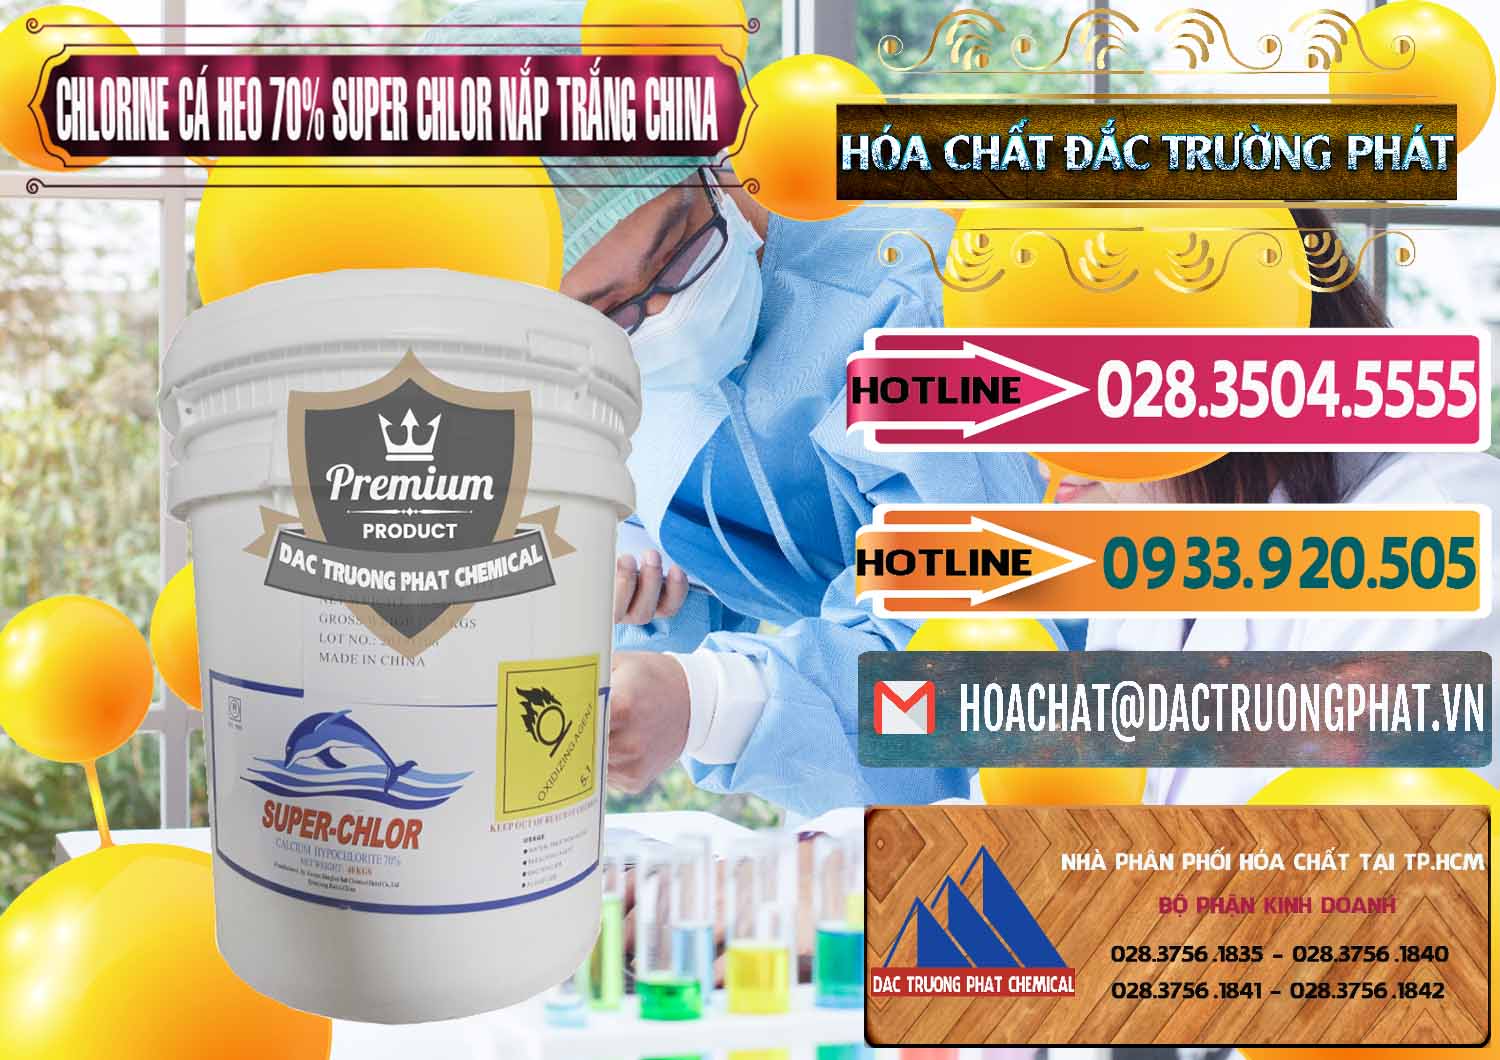 Nơi cung ứng và bán Clorin - Chlorine Cá Heo 70% Super Chlor Nắp Trắng Trung Quốc China - 0240 - Công ty chuyên phân phối ( nhập khẩu ) hóa chất tại TP.HCM - dactruongphat.vn